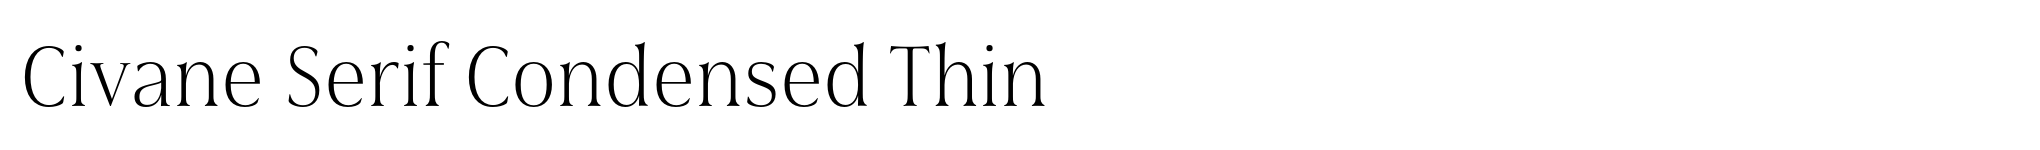 Civane Serif Condensed Thin image